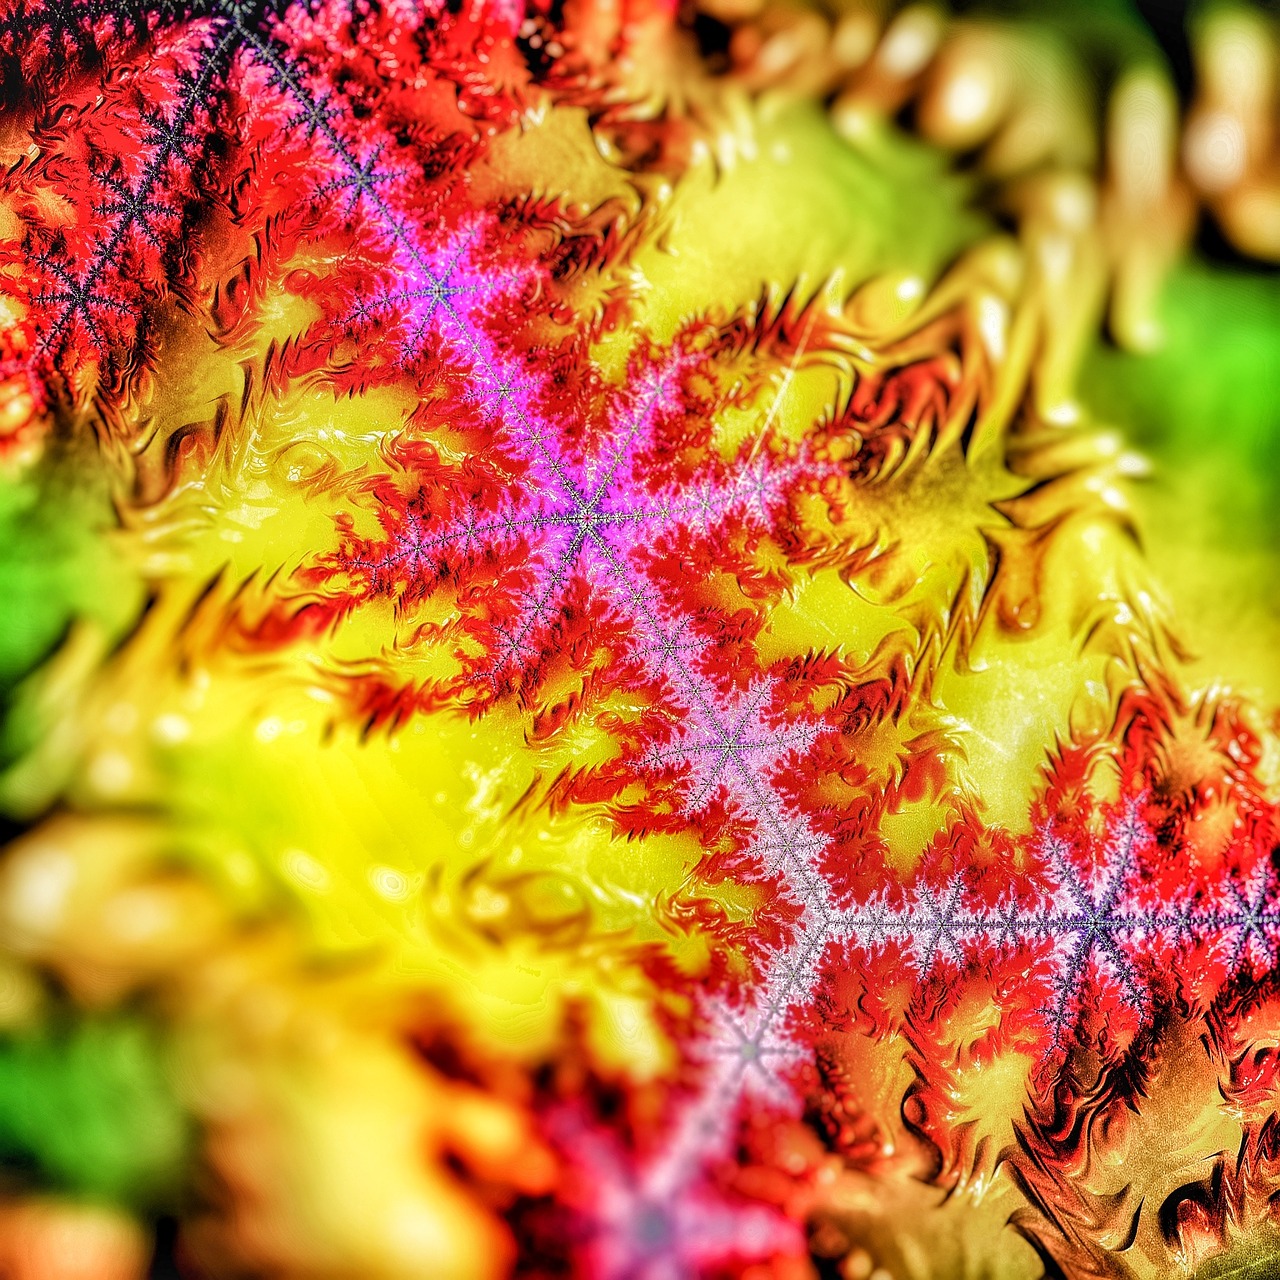 fractal mandelbrot art free photo